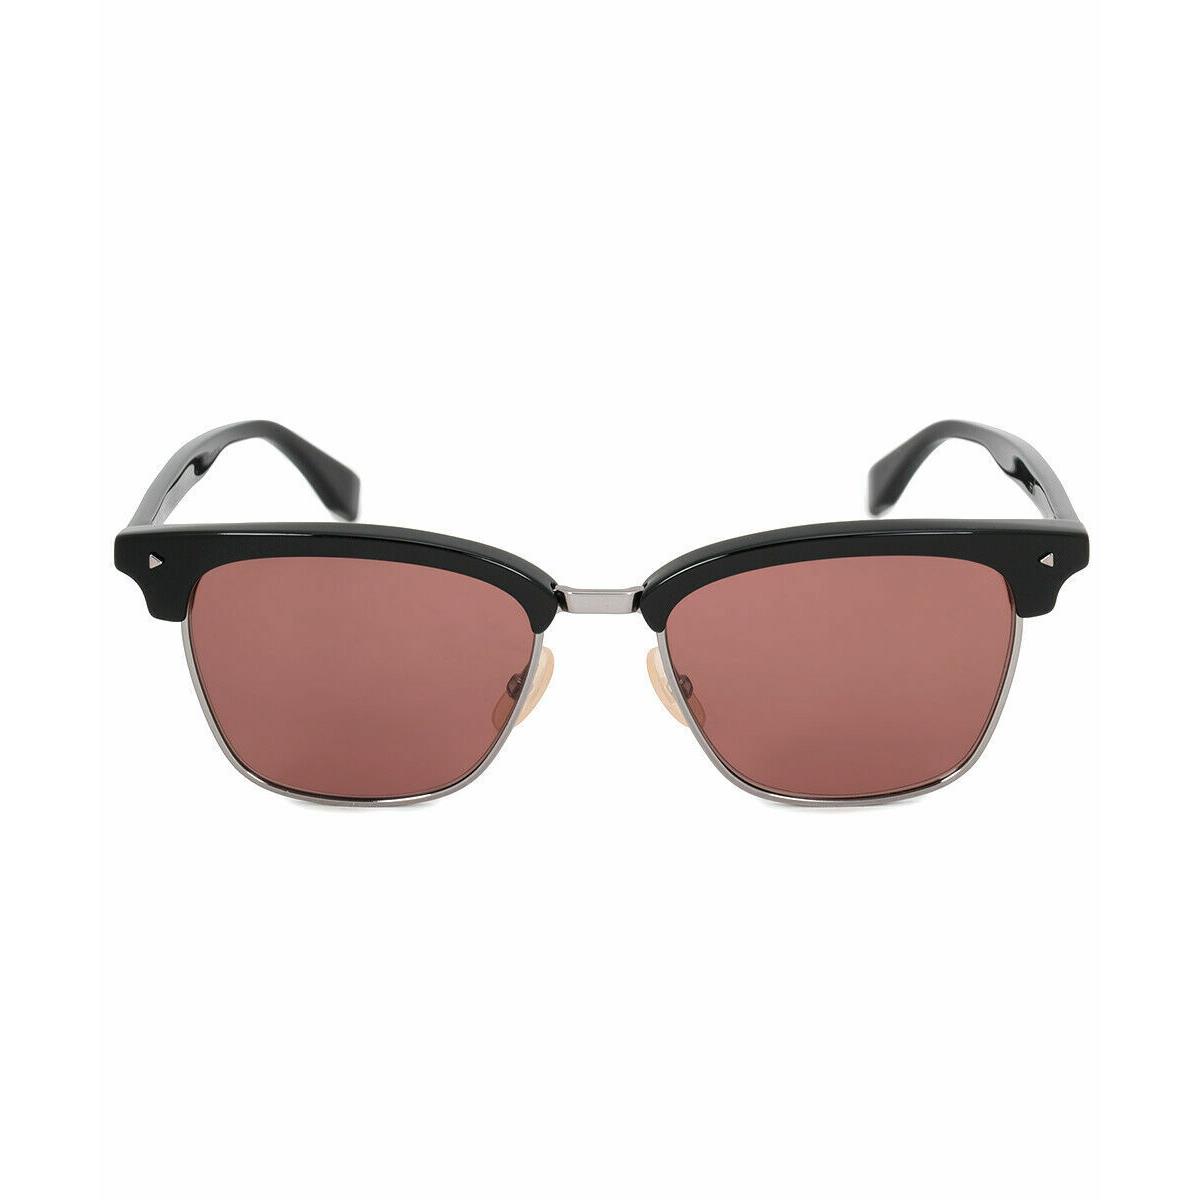 Fendi Clubmaster Sunglasses - FF M0003 807 - Black/bronze 52-18-145